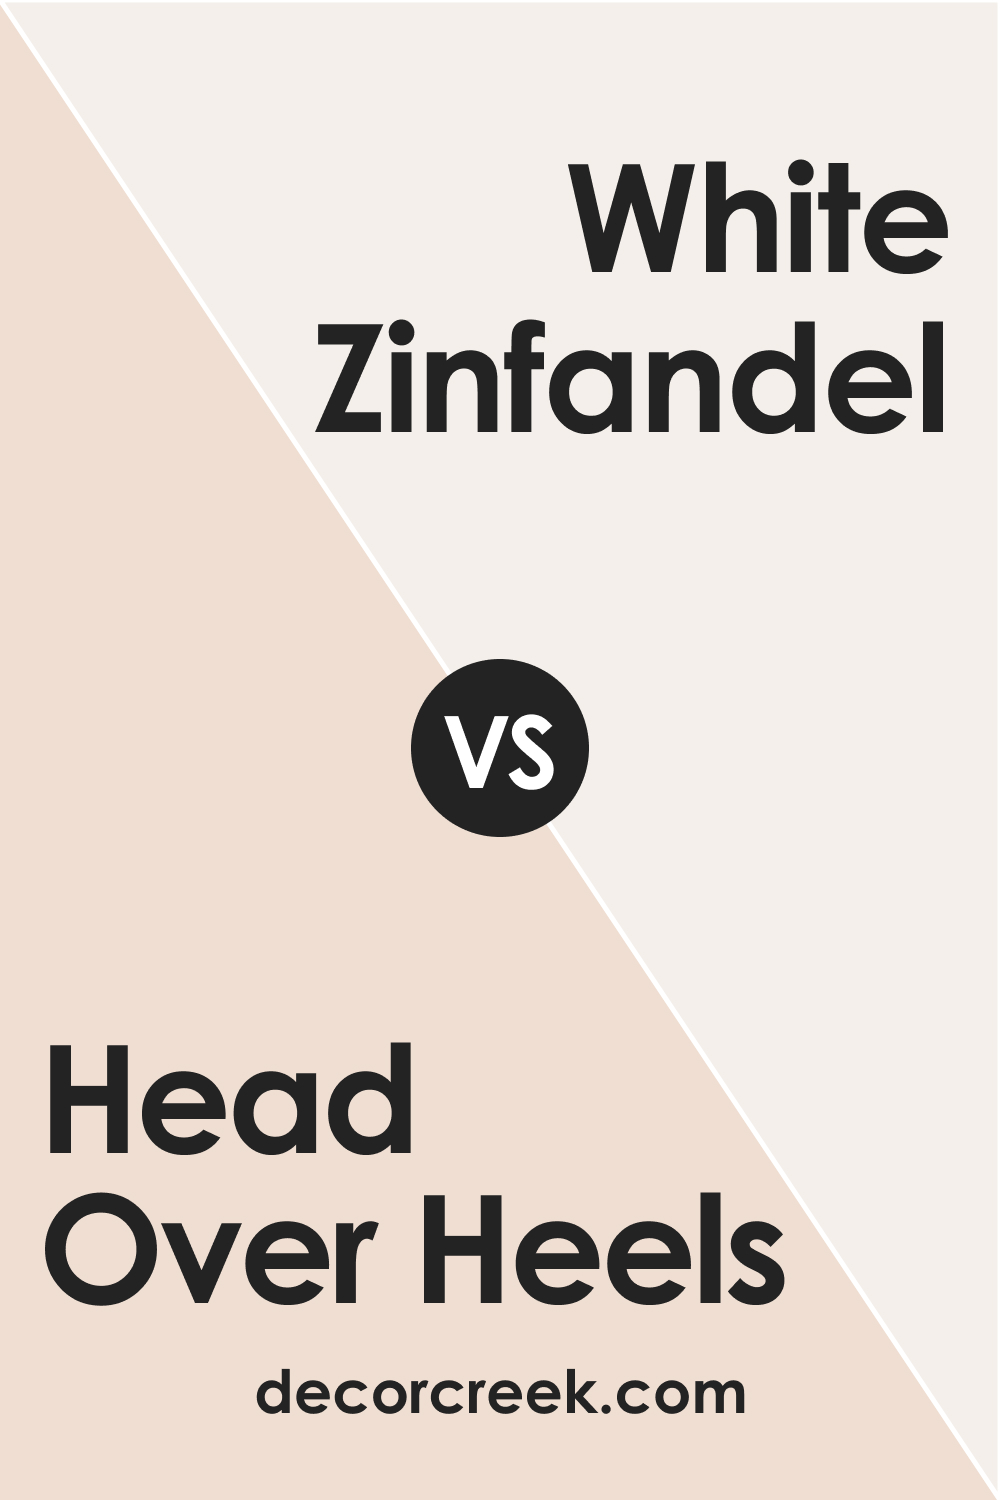 Head Over Heels AF-250 vs. BM 880 White Zinfandel